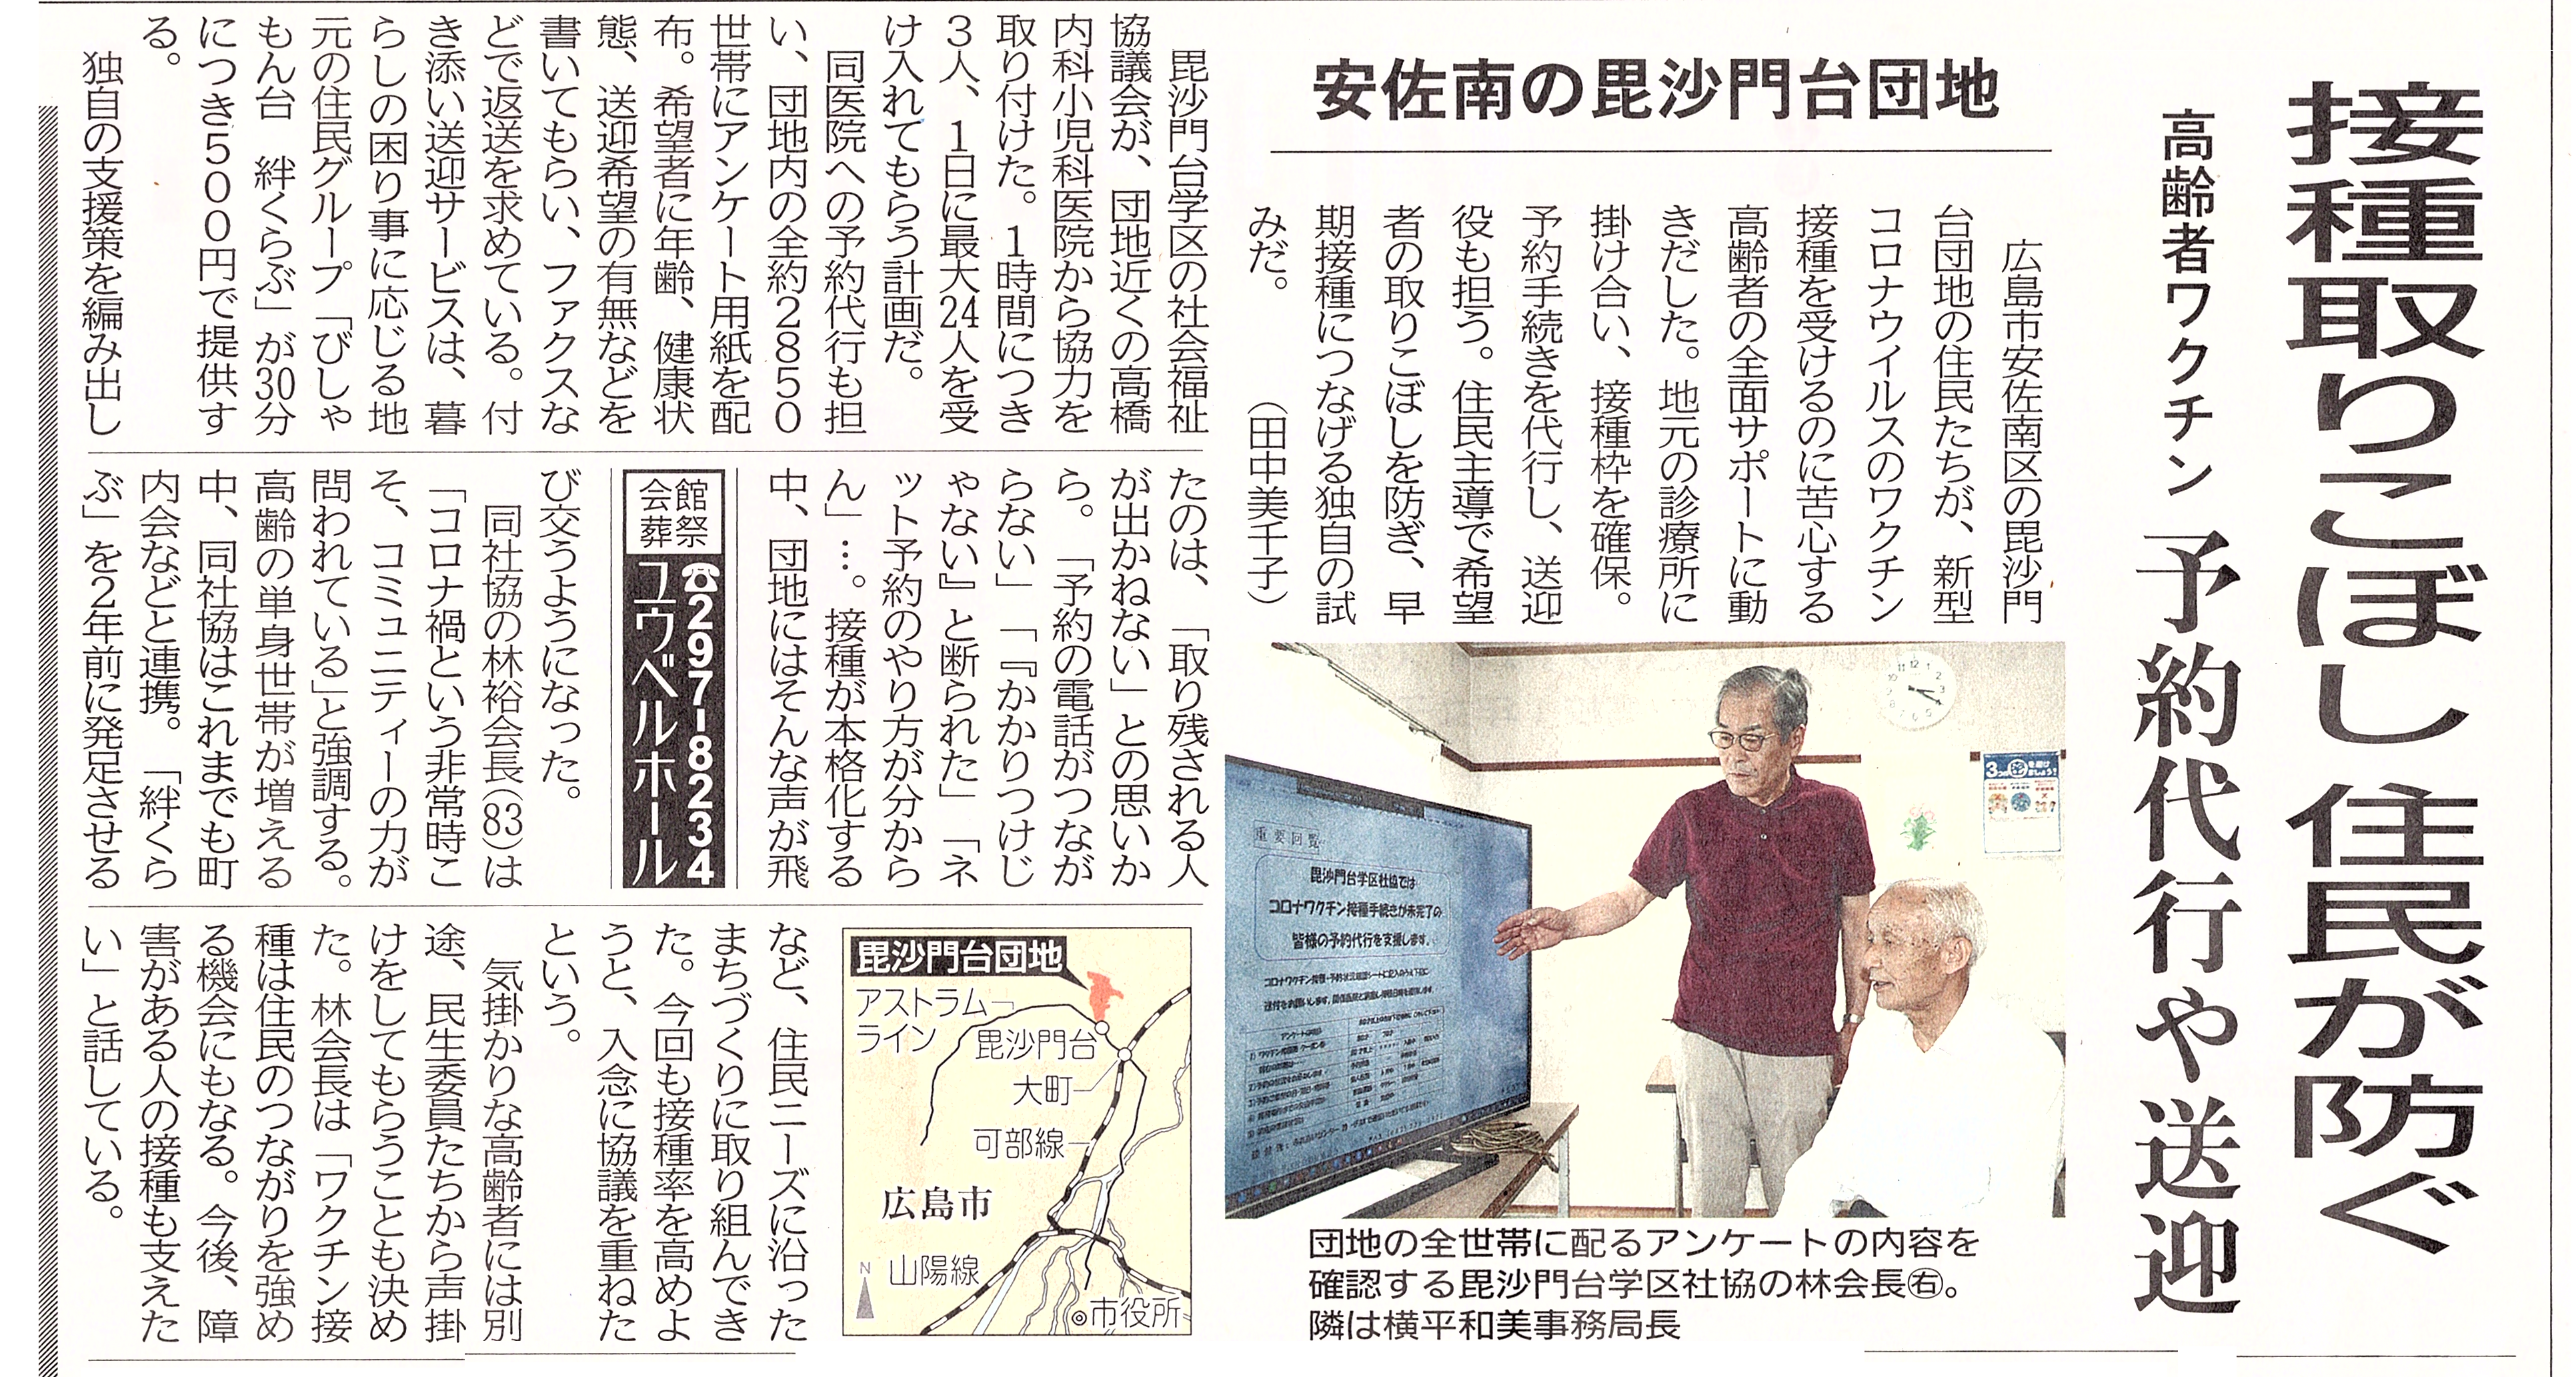 ワクチン接種の予約代行、送迎の取組が中国新聞に掲載されました。